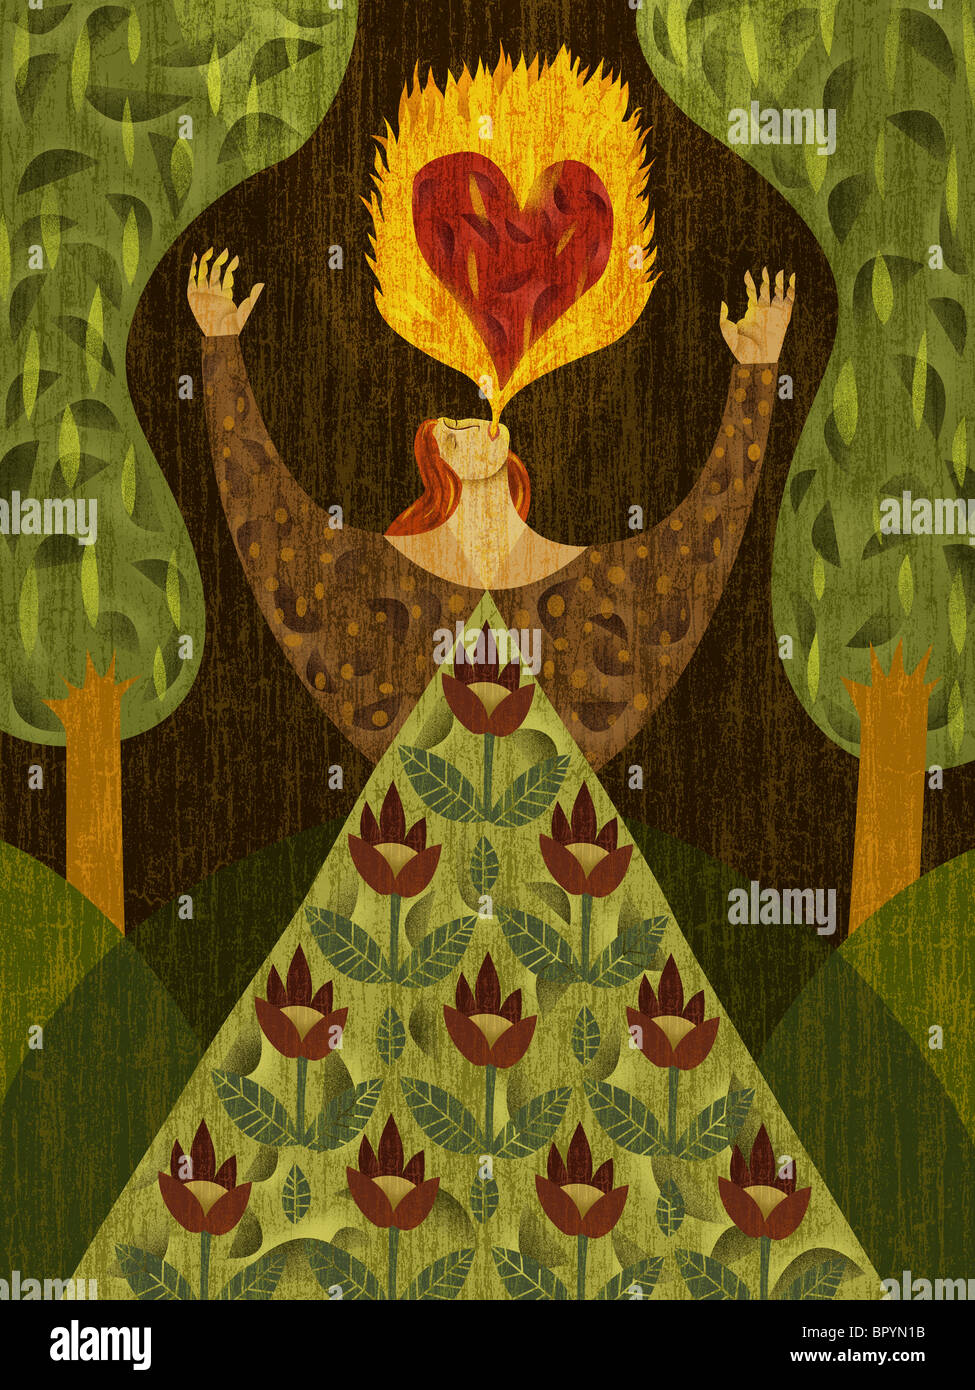 Une femme dans une forêt, la respiration de feu avec coeur-forme en c Banque D'Images